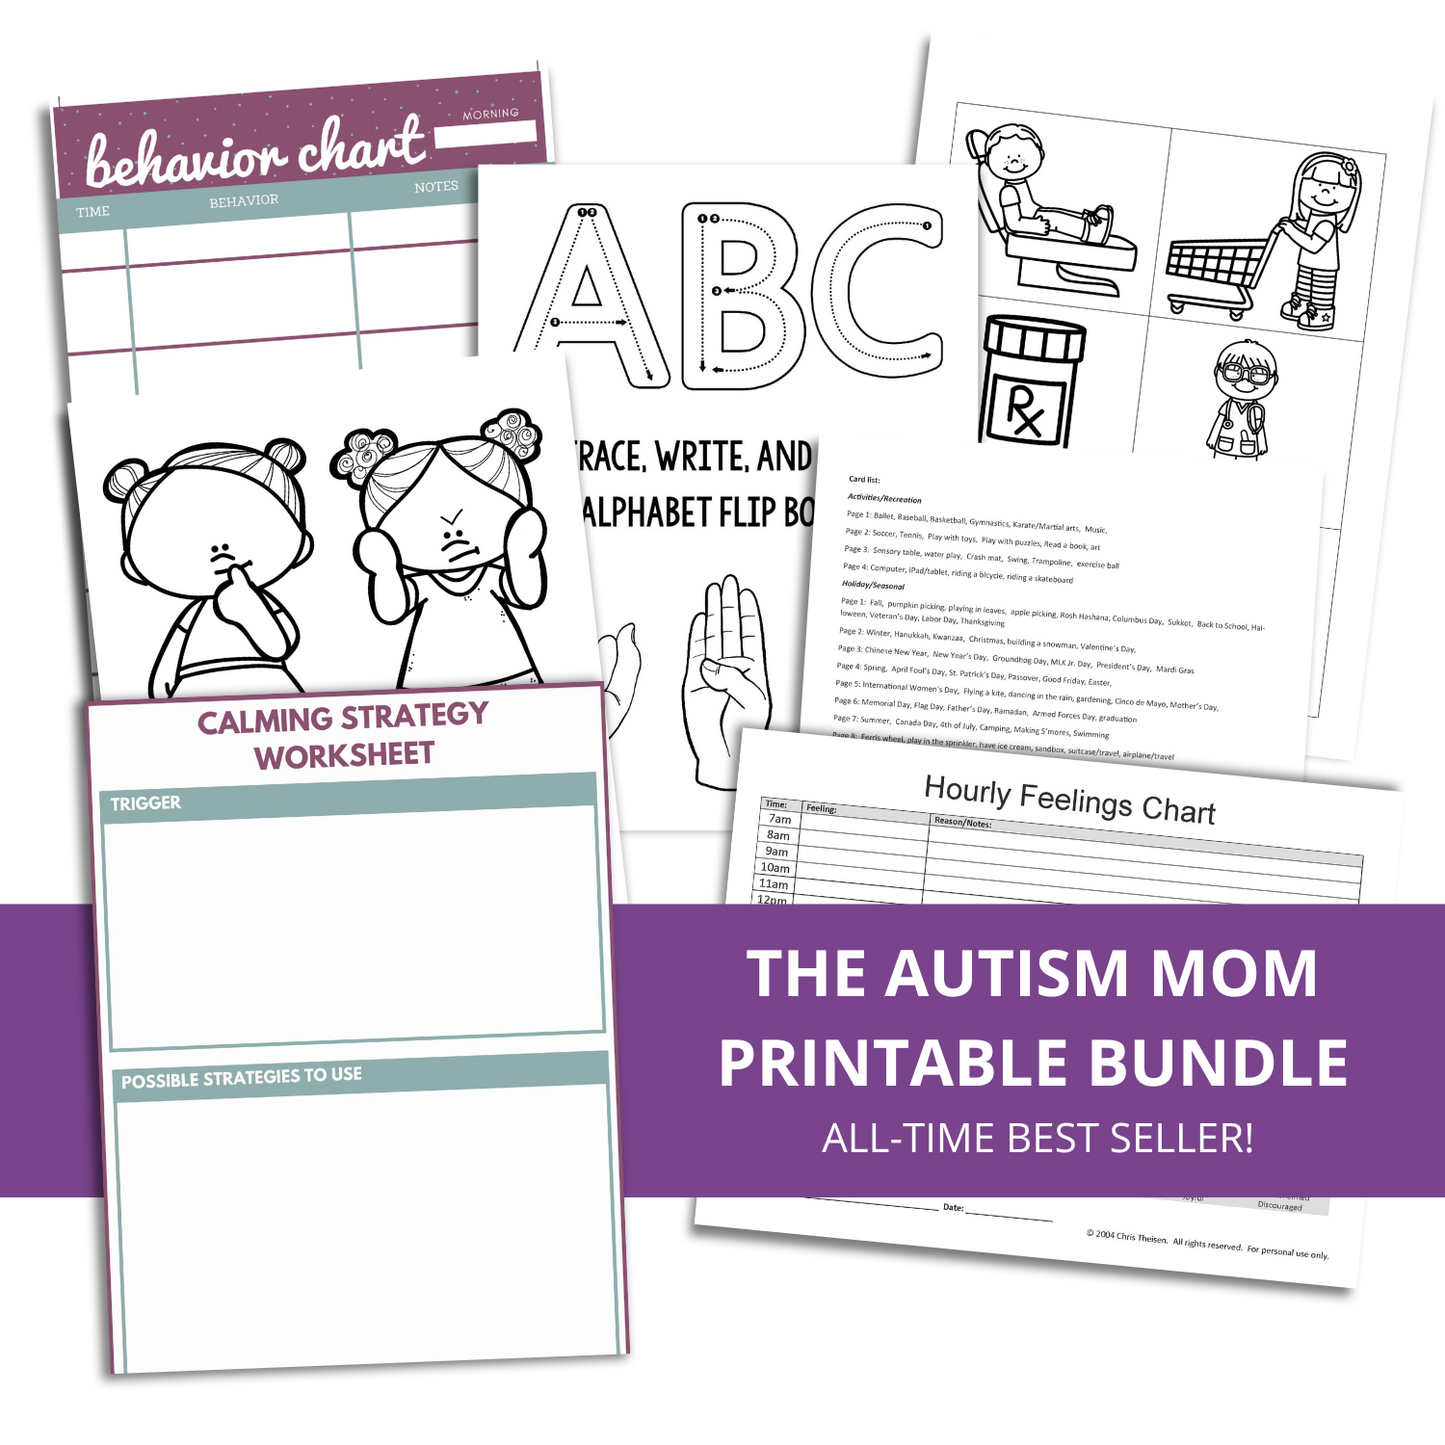 The Autism Mom Printable Bundle